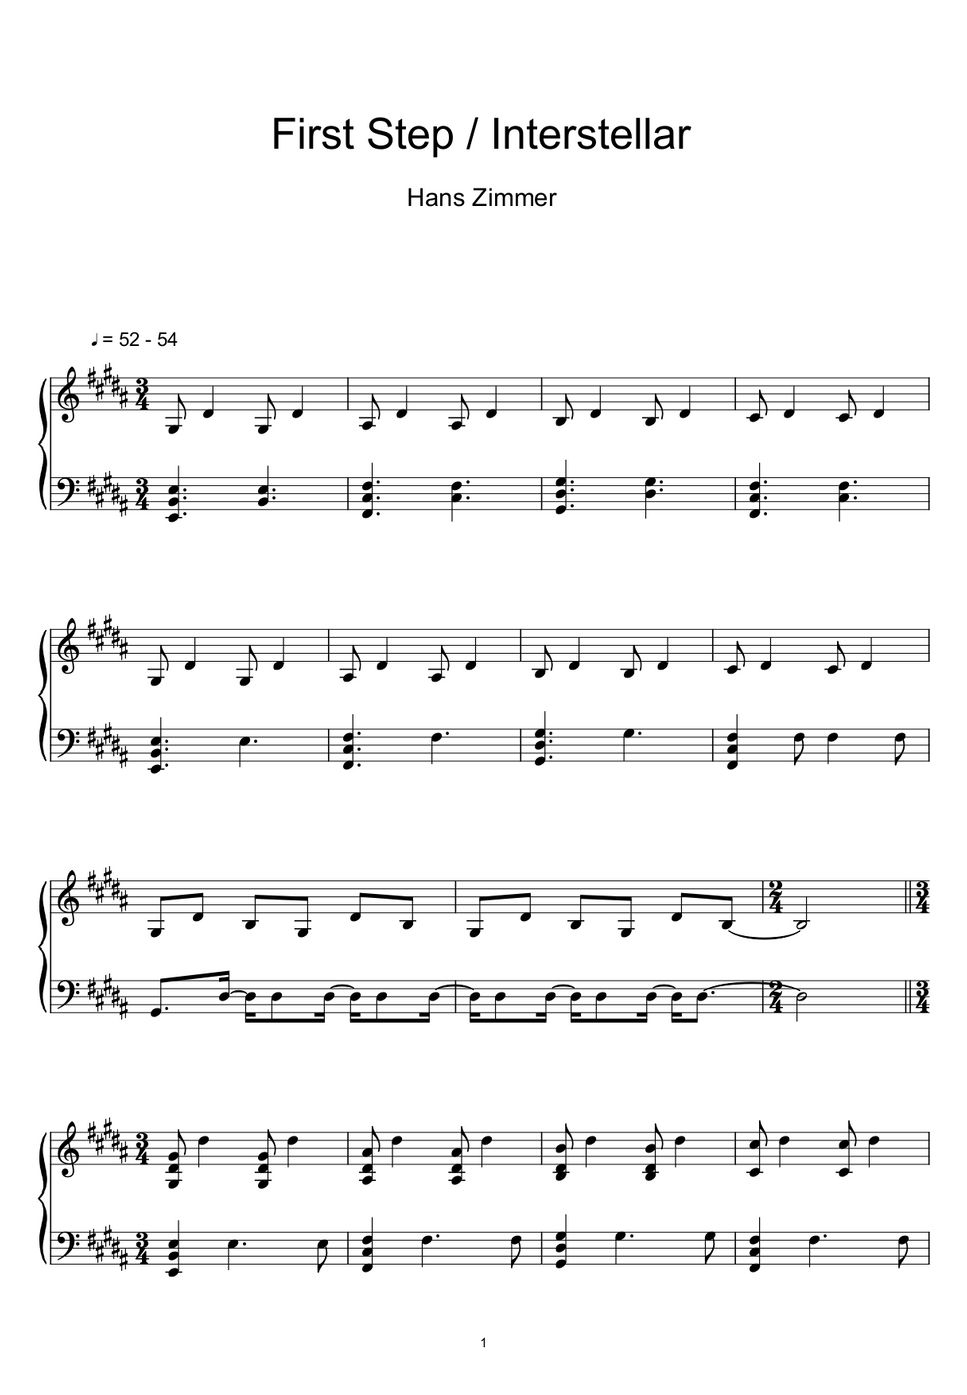 Hans Zimmer - First Step (Interstellar) (Sheet Music, MIDI,) by sayu